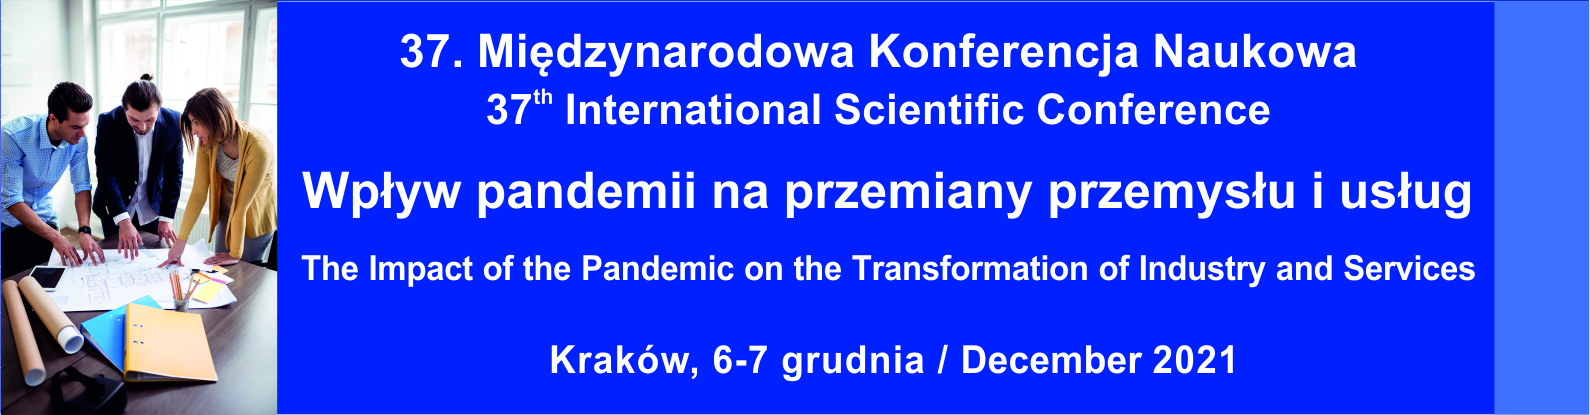 37-Miedzynarodowa-Konferencja-Naukowa-Wplyw-pandemii-na-przemiany-przemyslu-i-usług-02